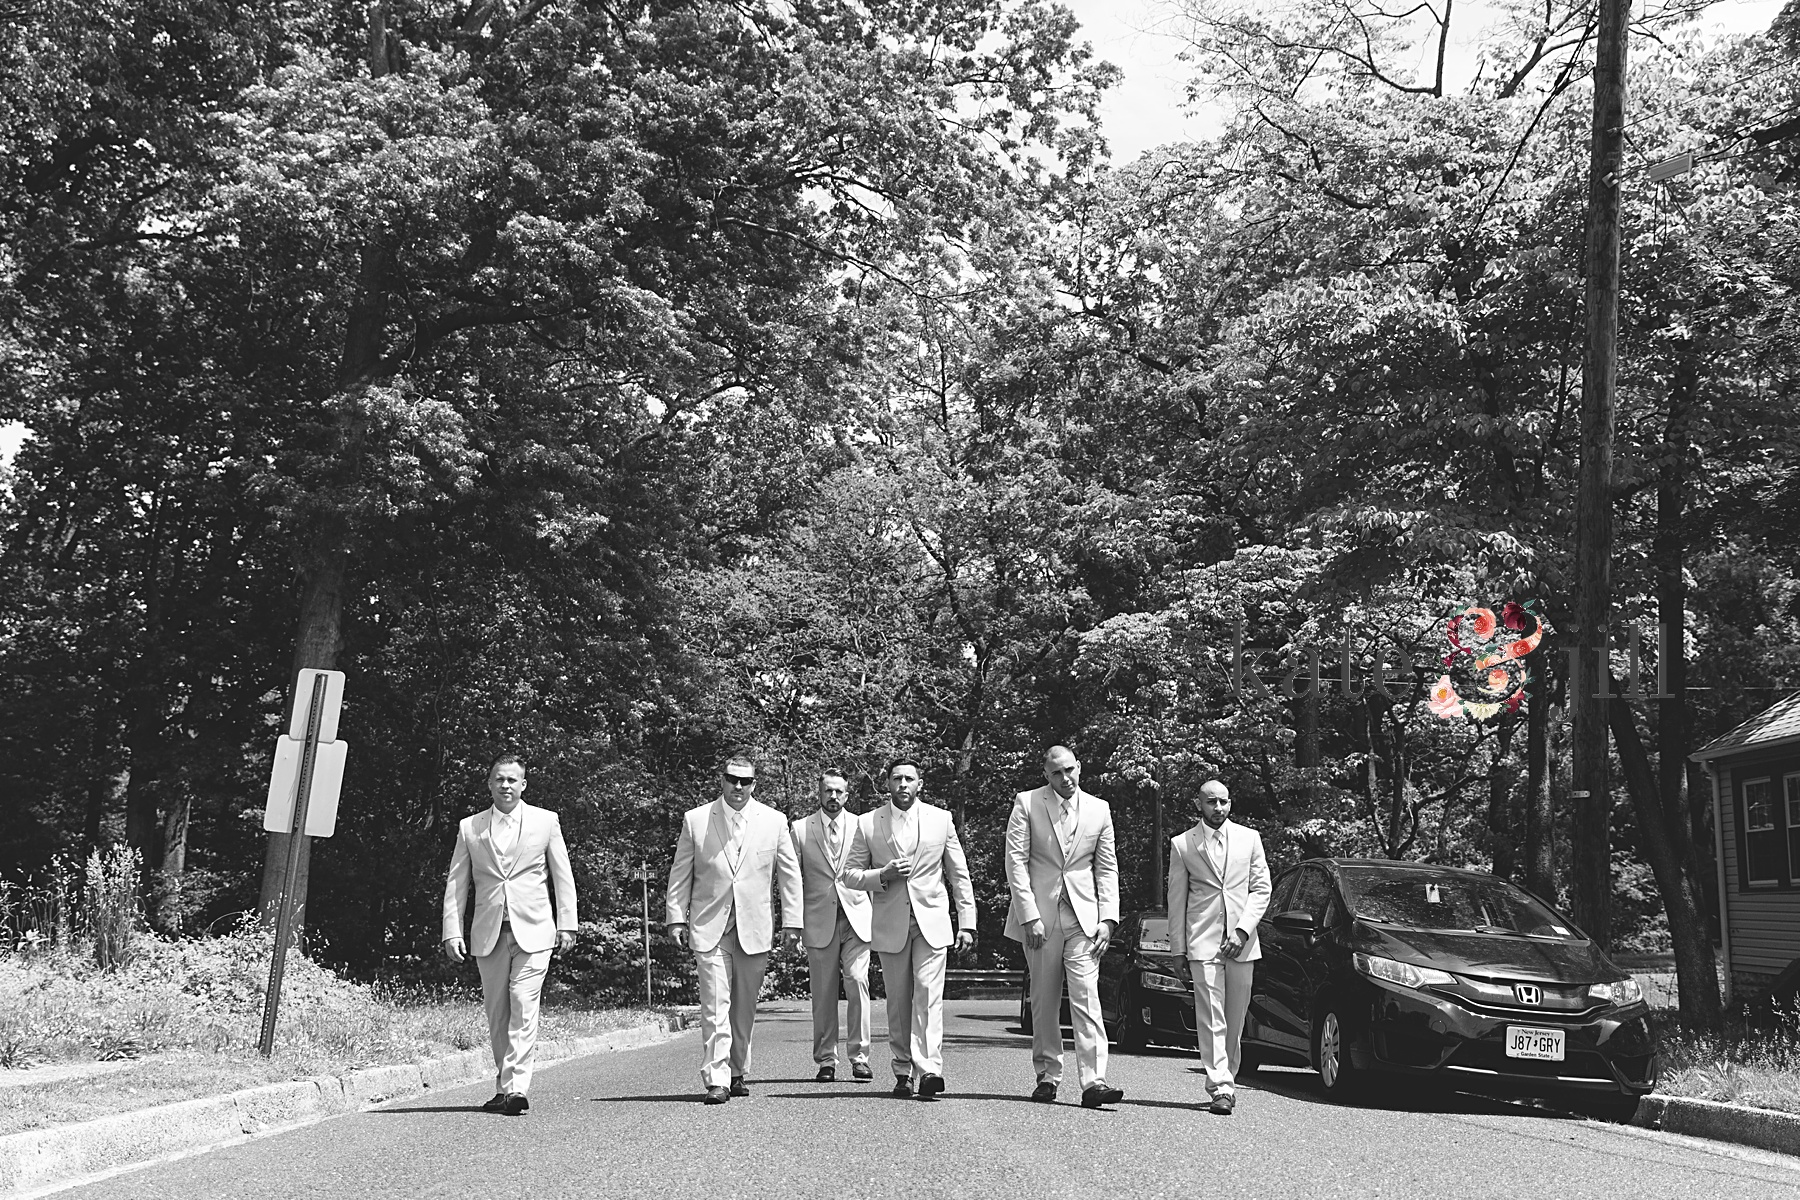 groom and groomsmen walking in street